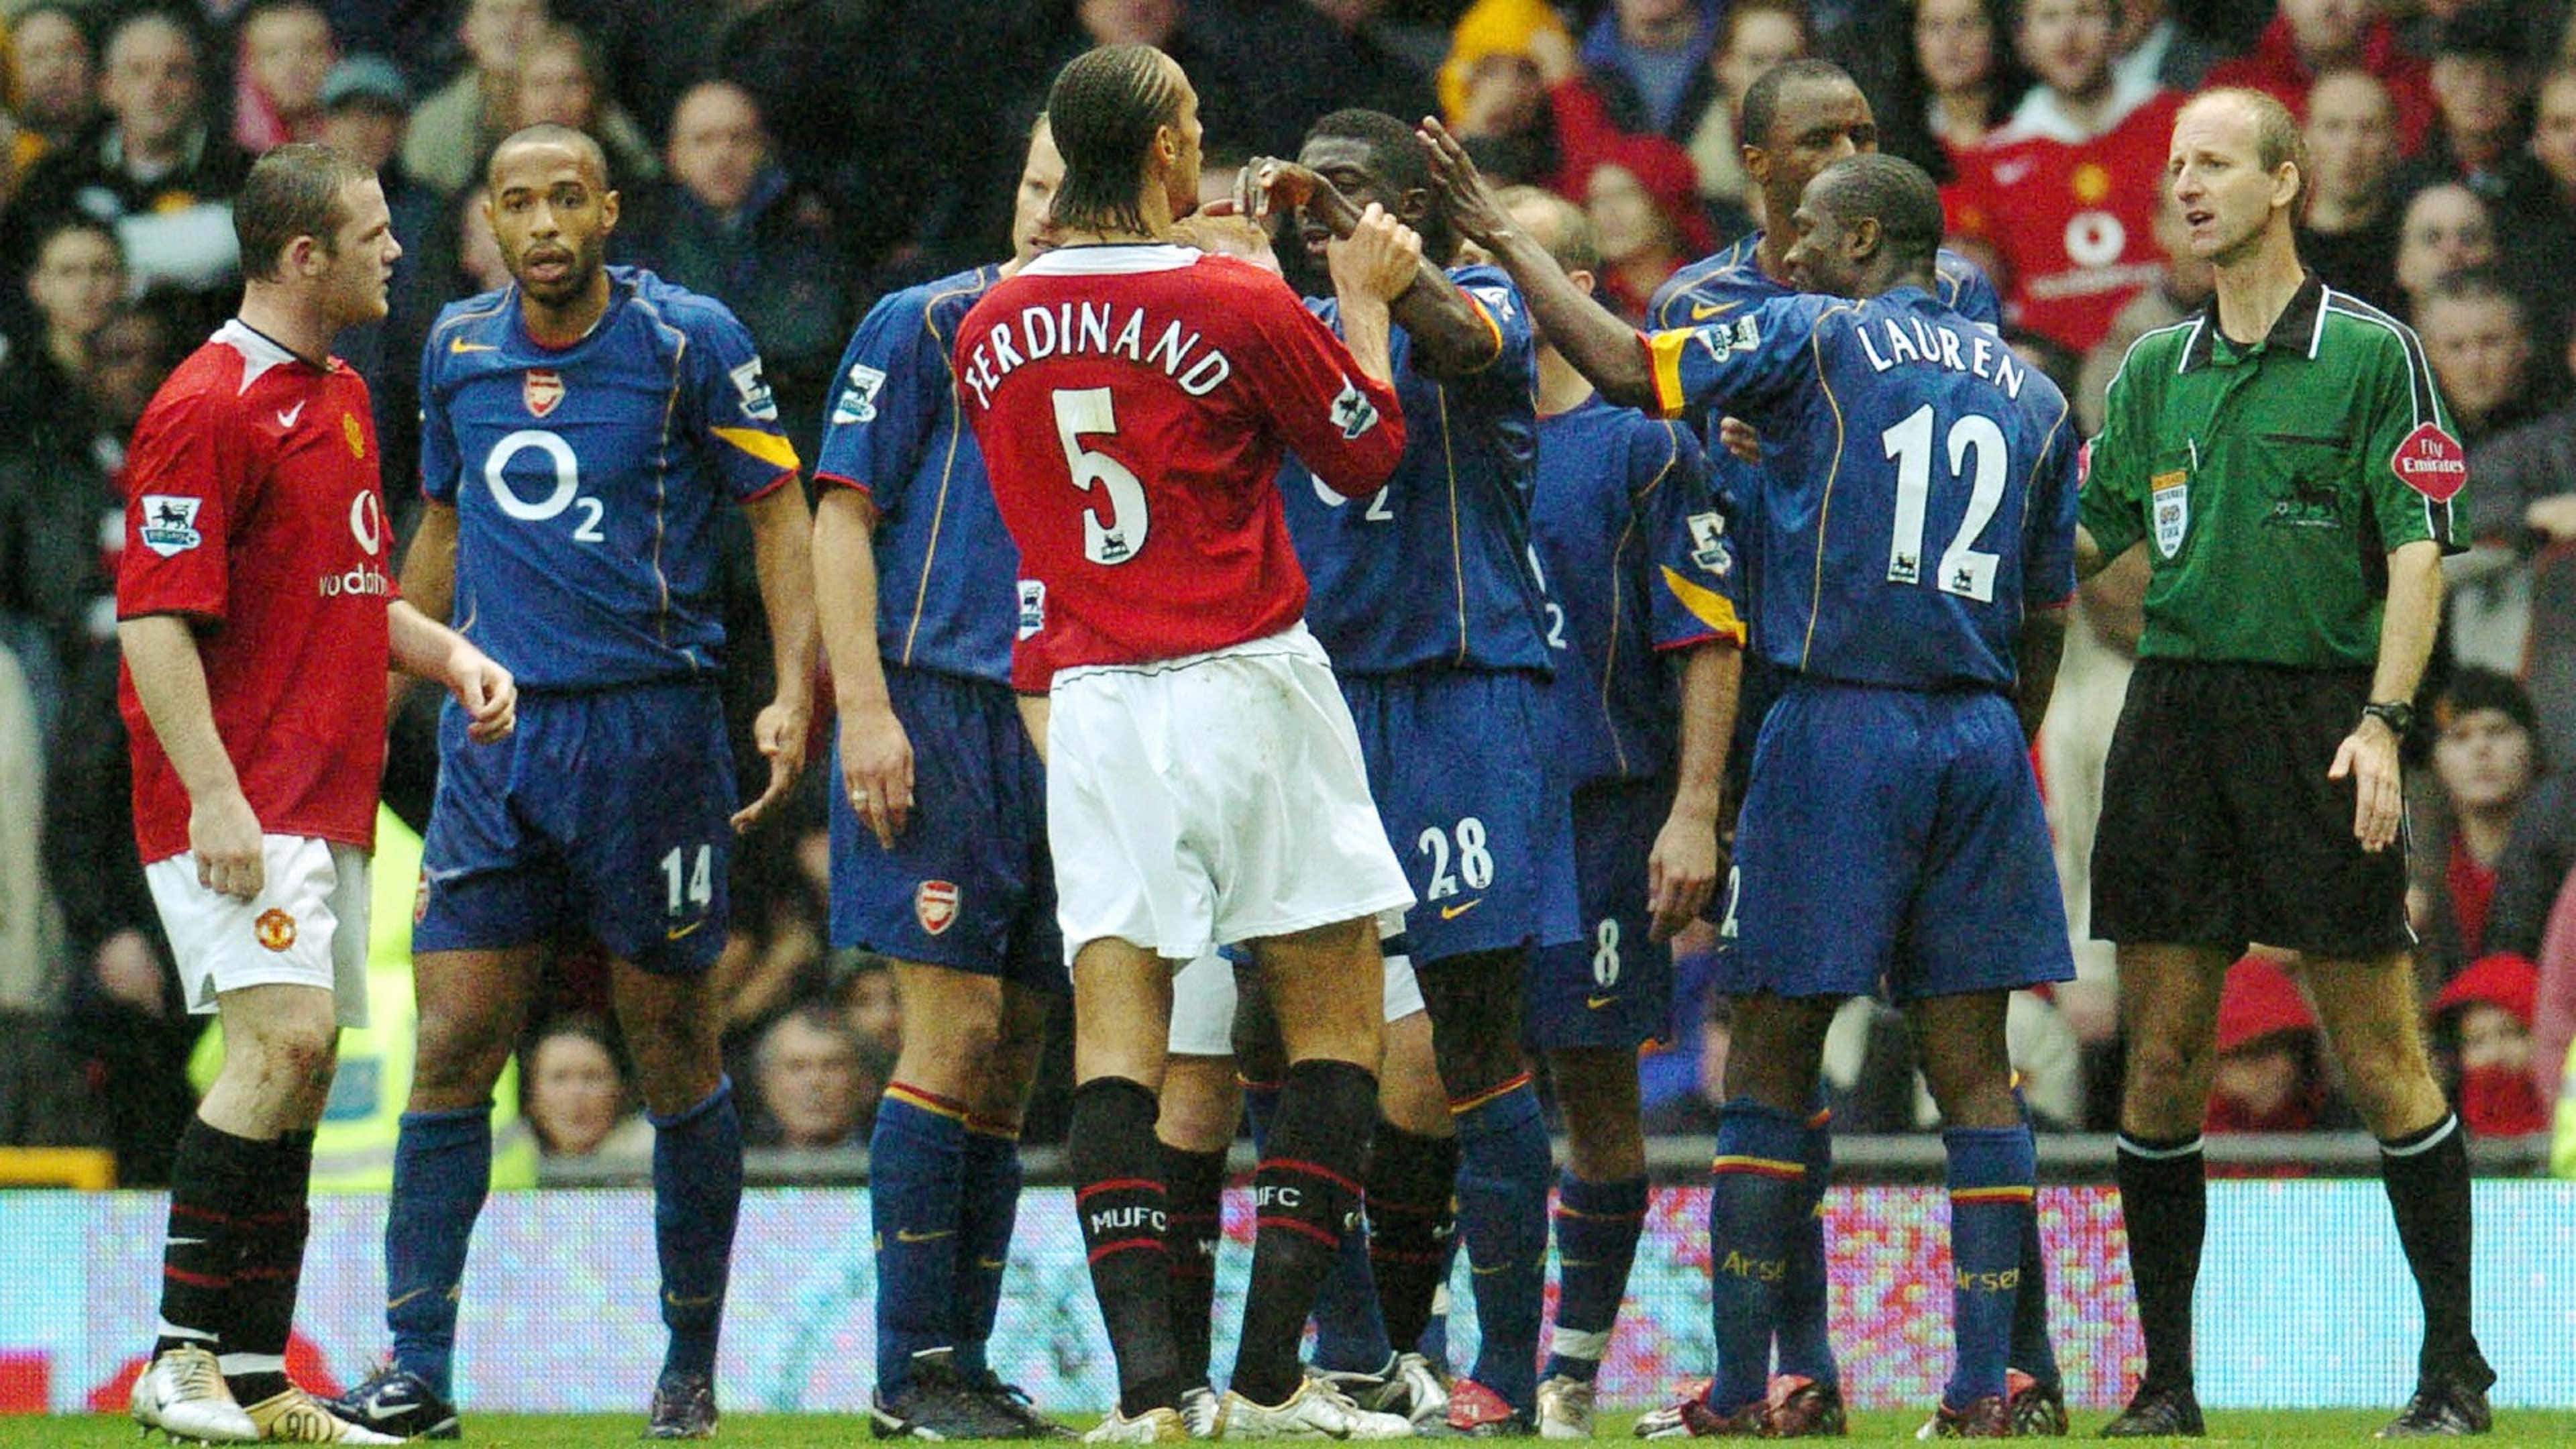 Manchester United vs Arsenal, Premier League 2004-05